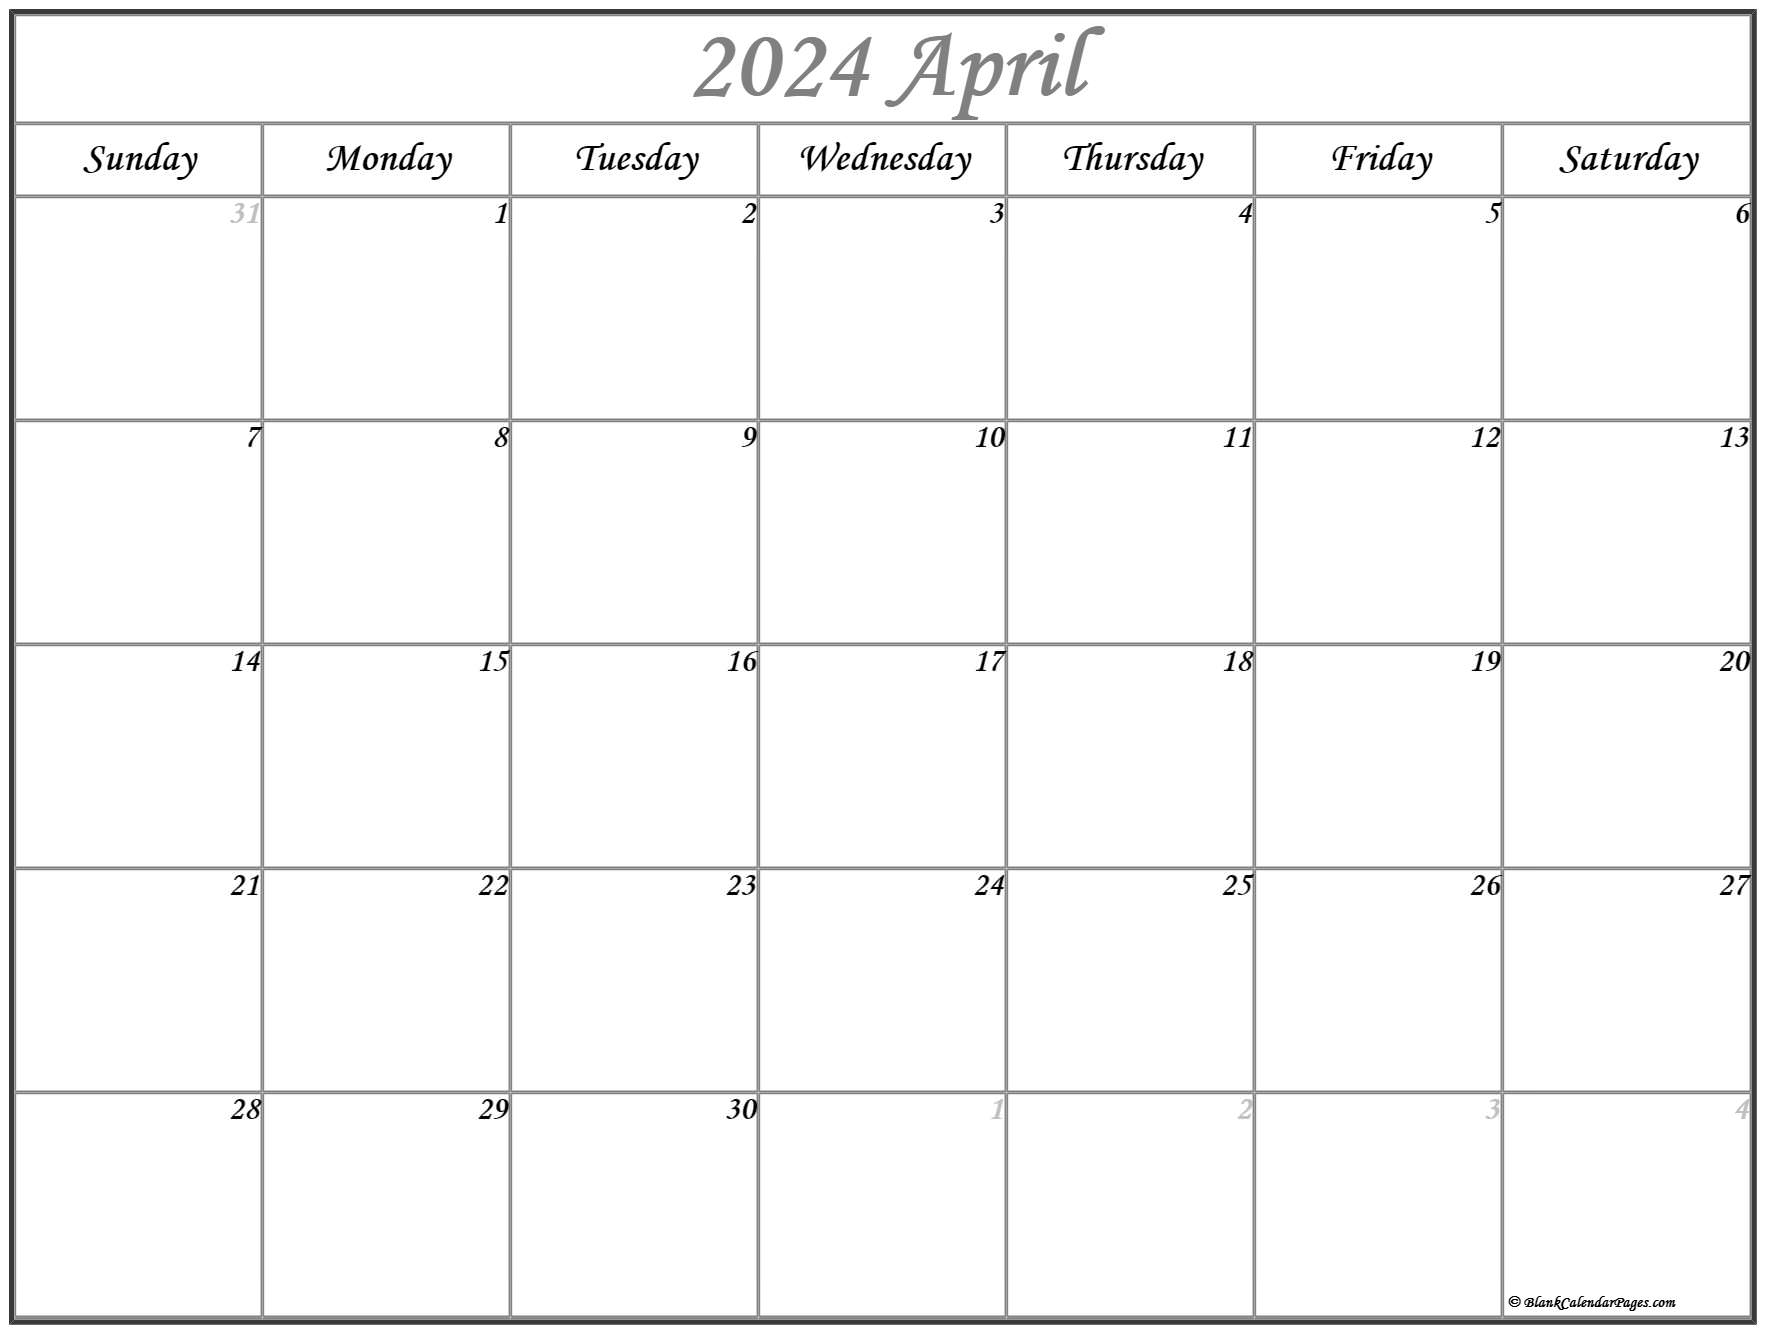 calendar-april-2023-calendar-calendar-2023-with-federal-holidays